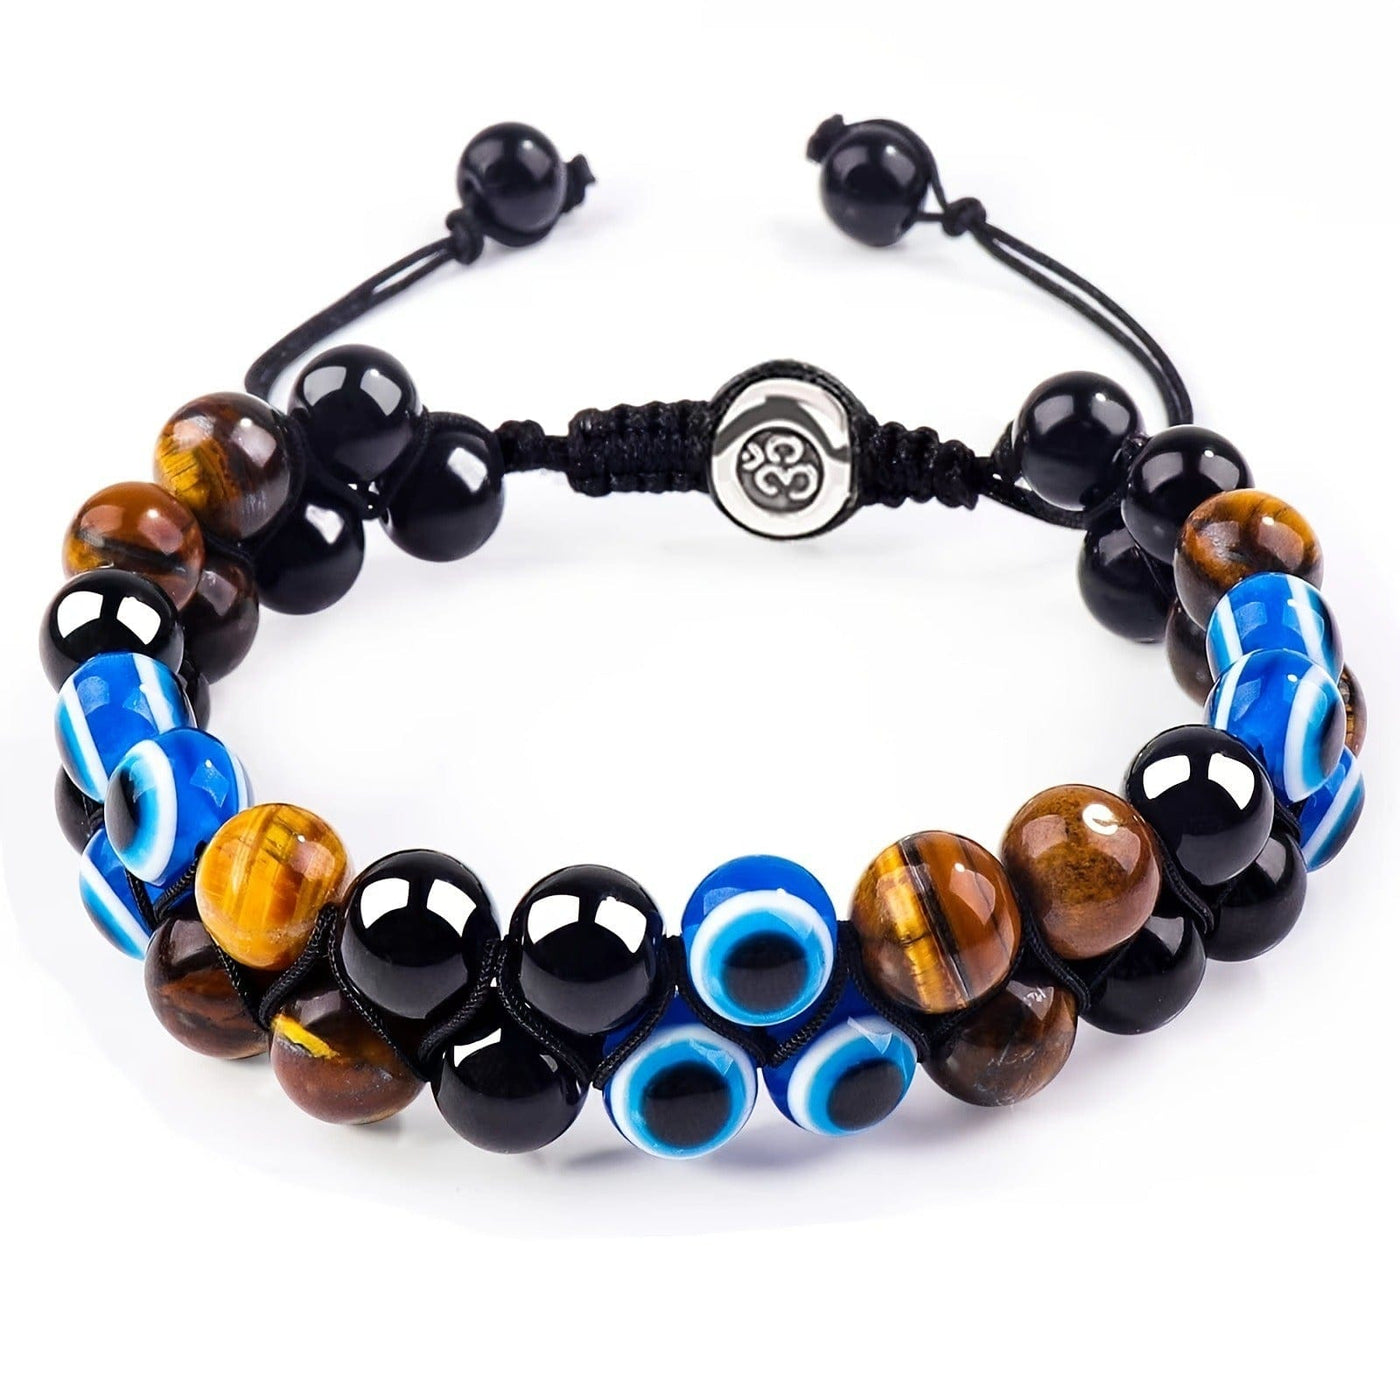 Bracelet - Men's Tiger Eye Agate Adjustable Black Magnet Yoga Bracelet